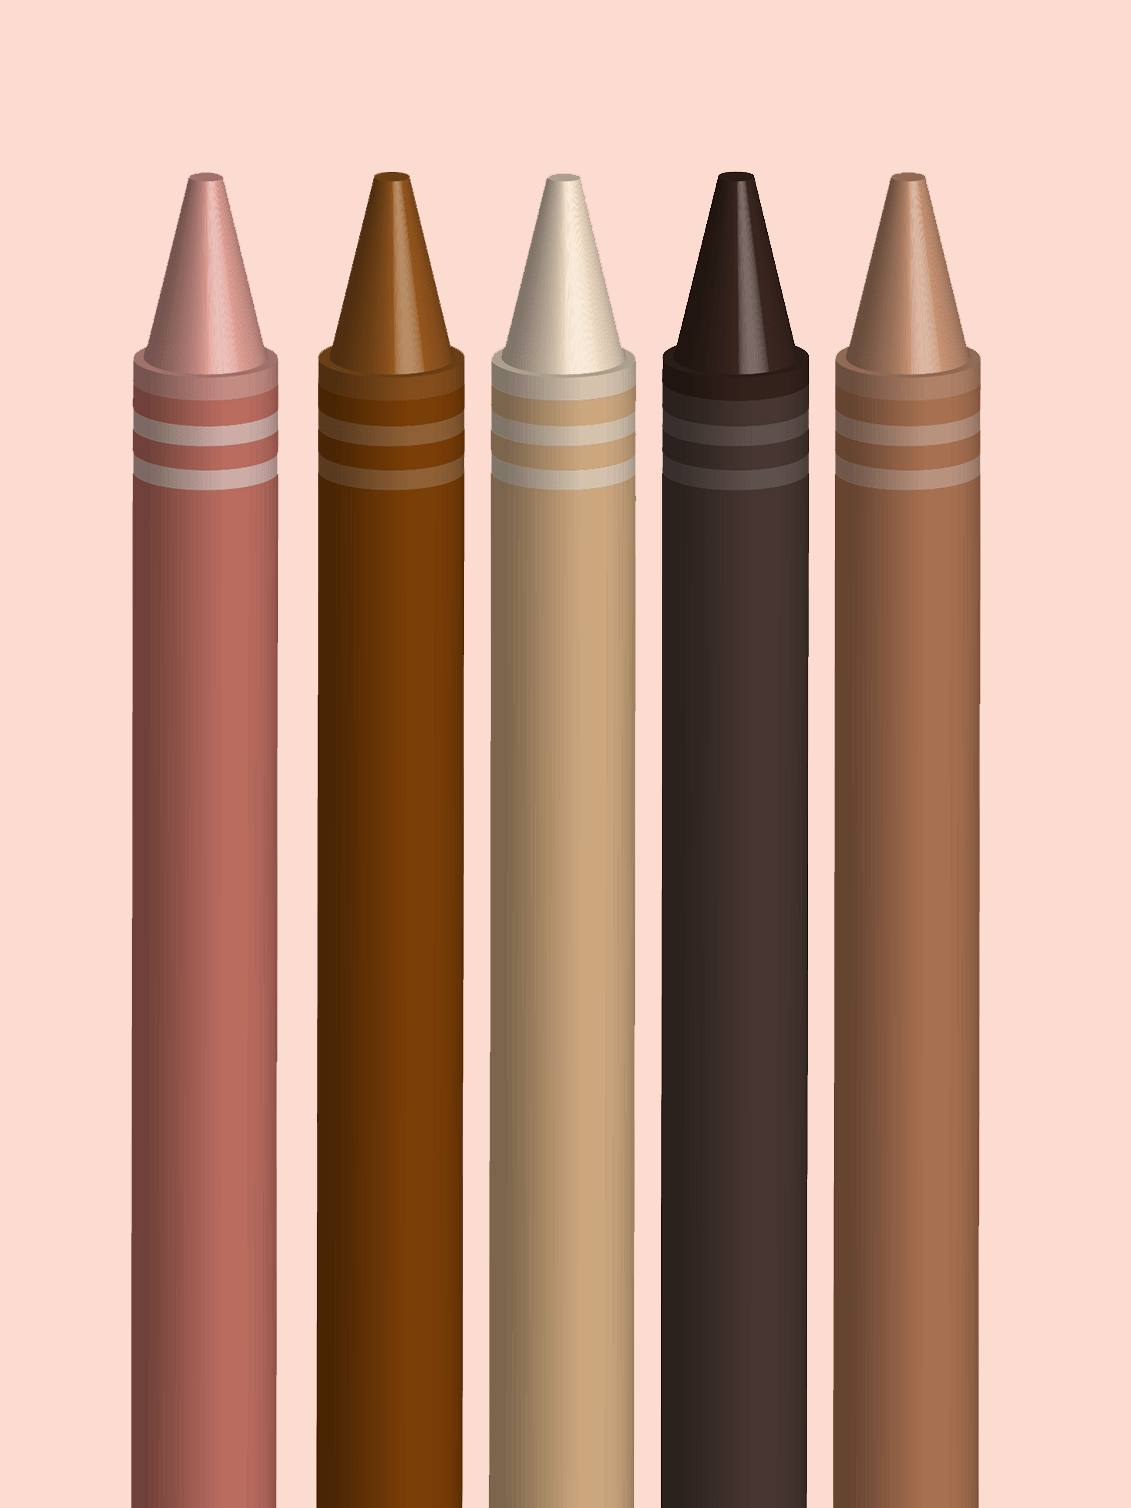 Crayons in flesh tones